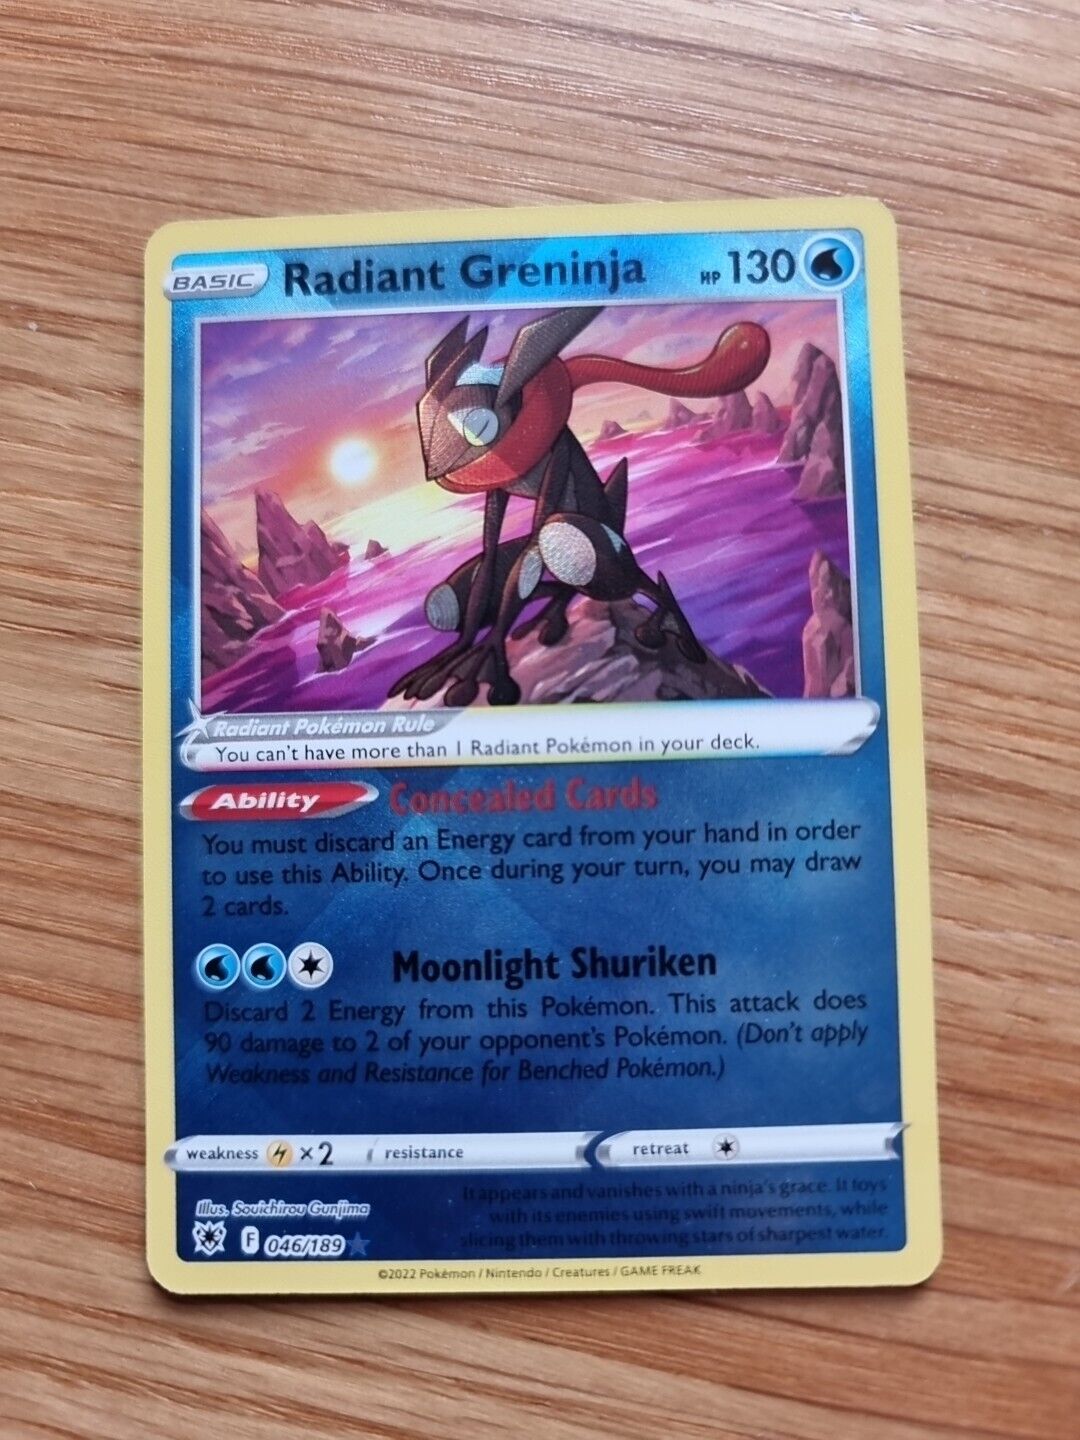 Pokémon TCG - 046/189 Radiant Greninja - Astral Radiance - Radiant Holo